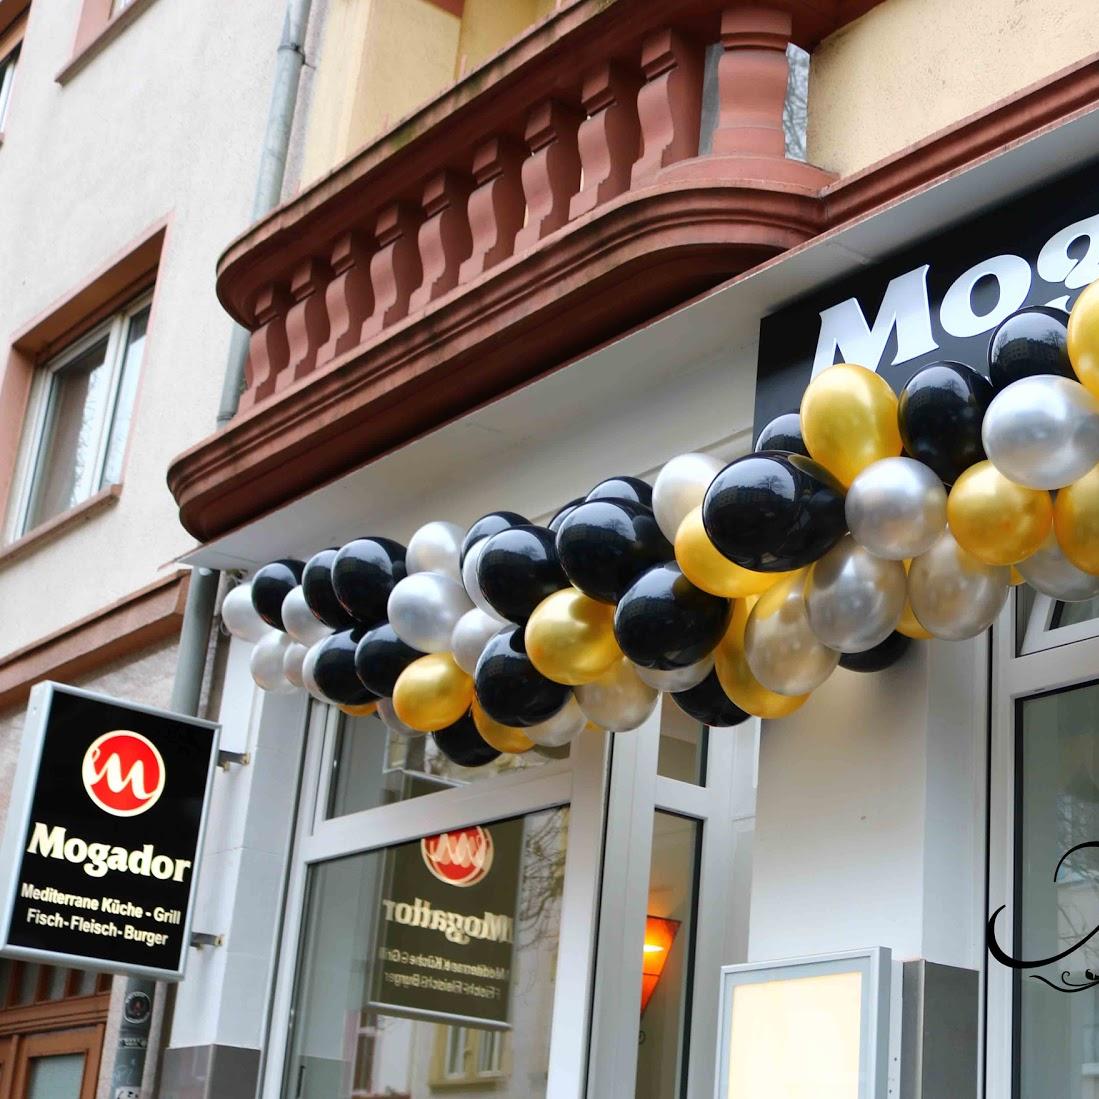 Restaurant "Mogador Frankfurt" in Frankfurt am Main